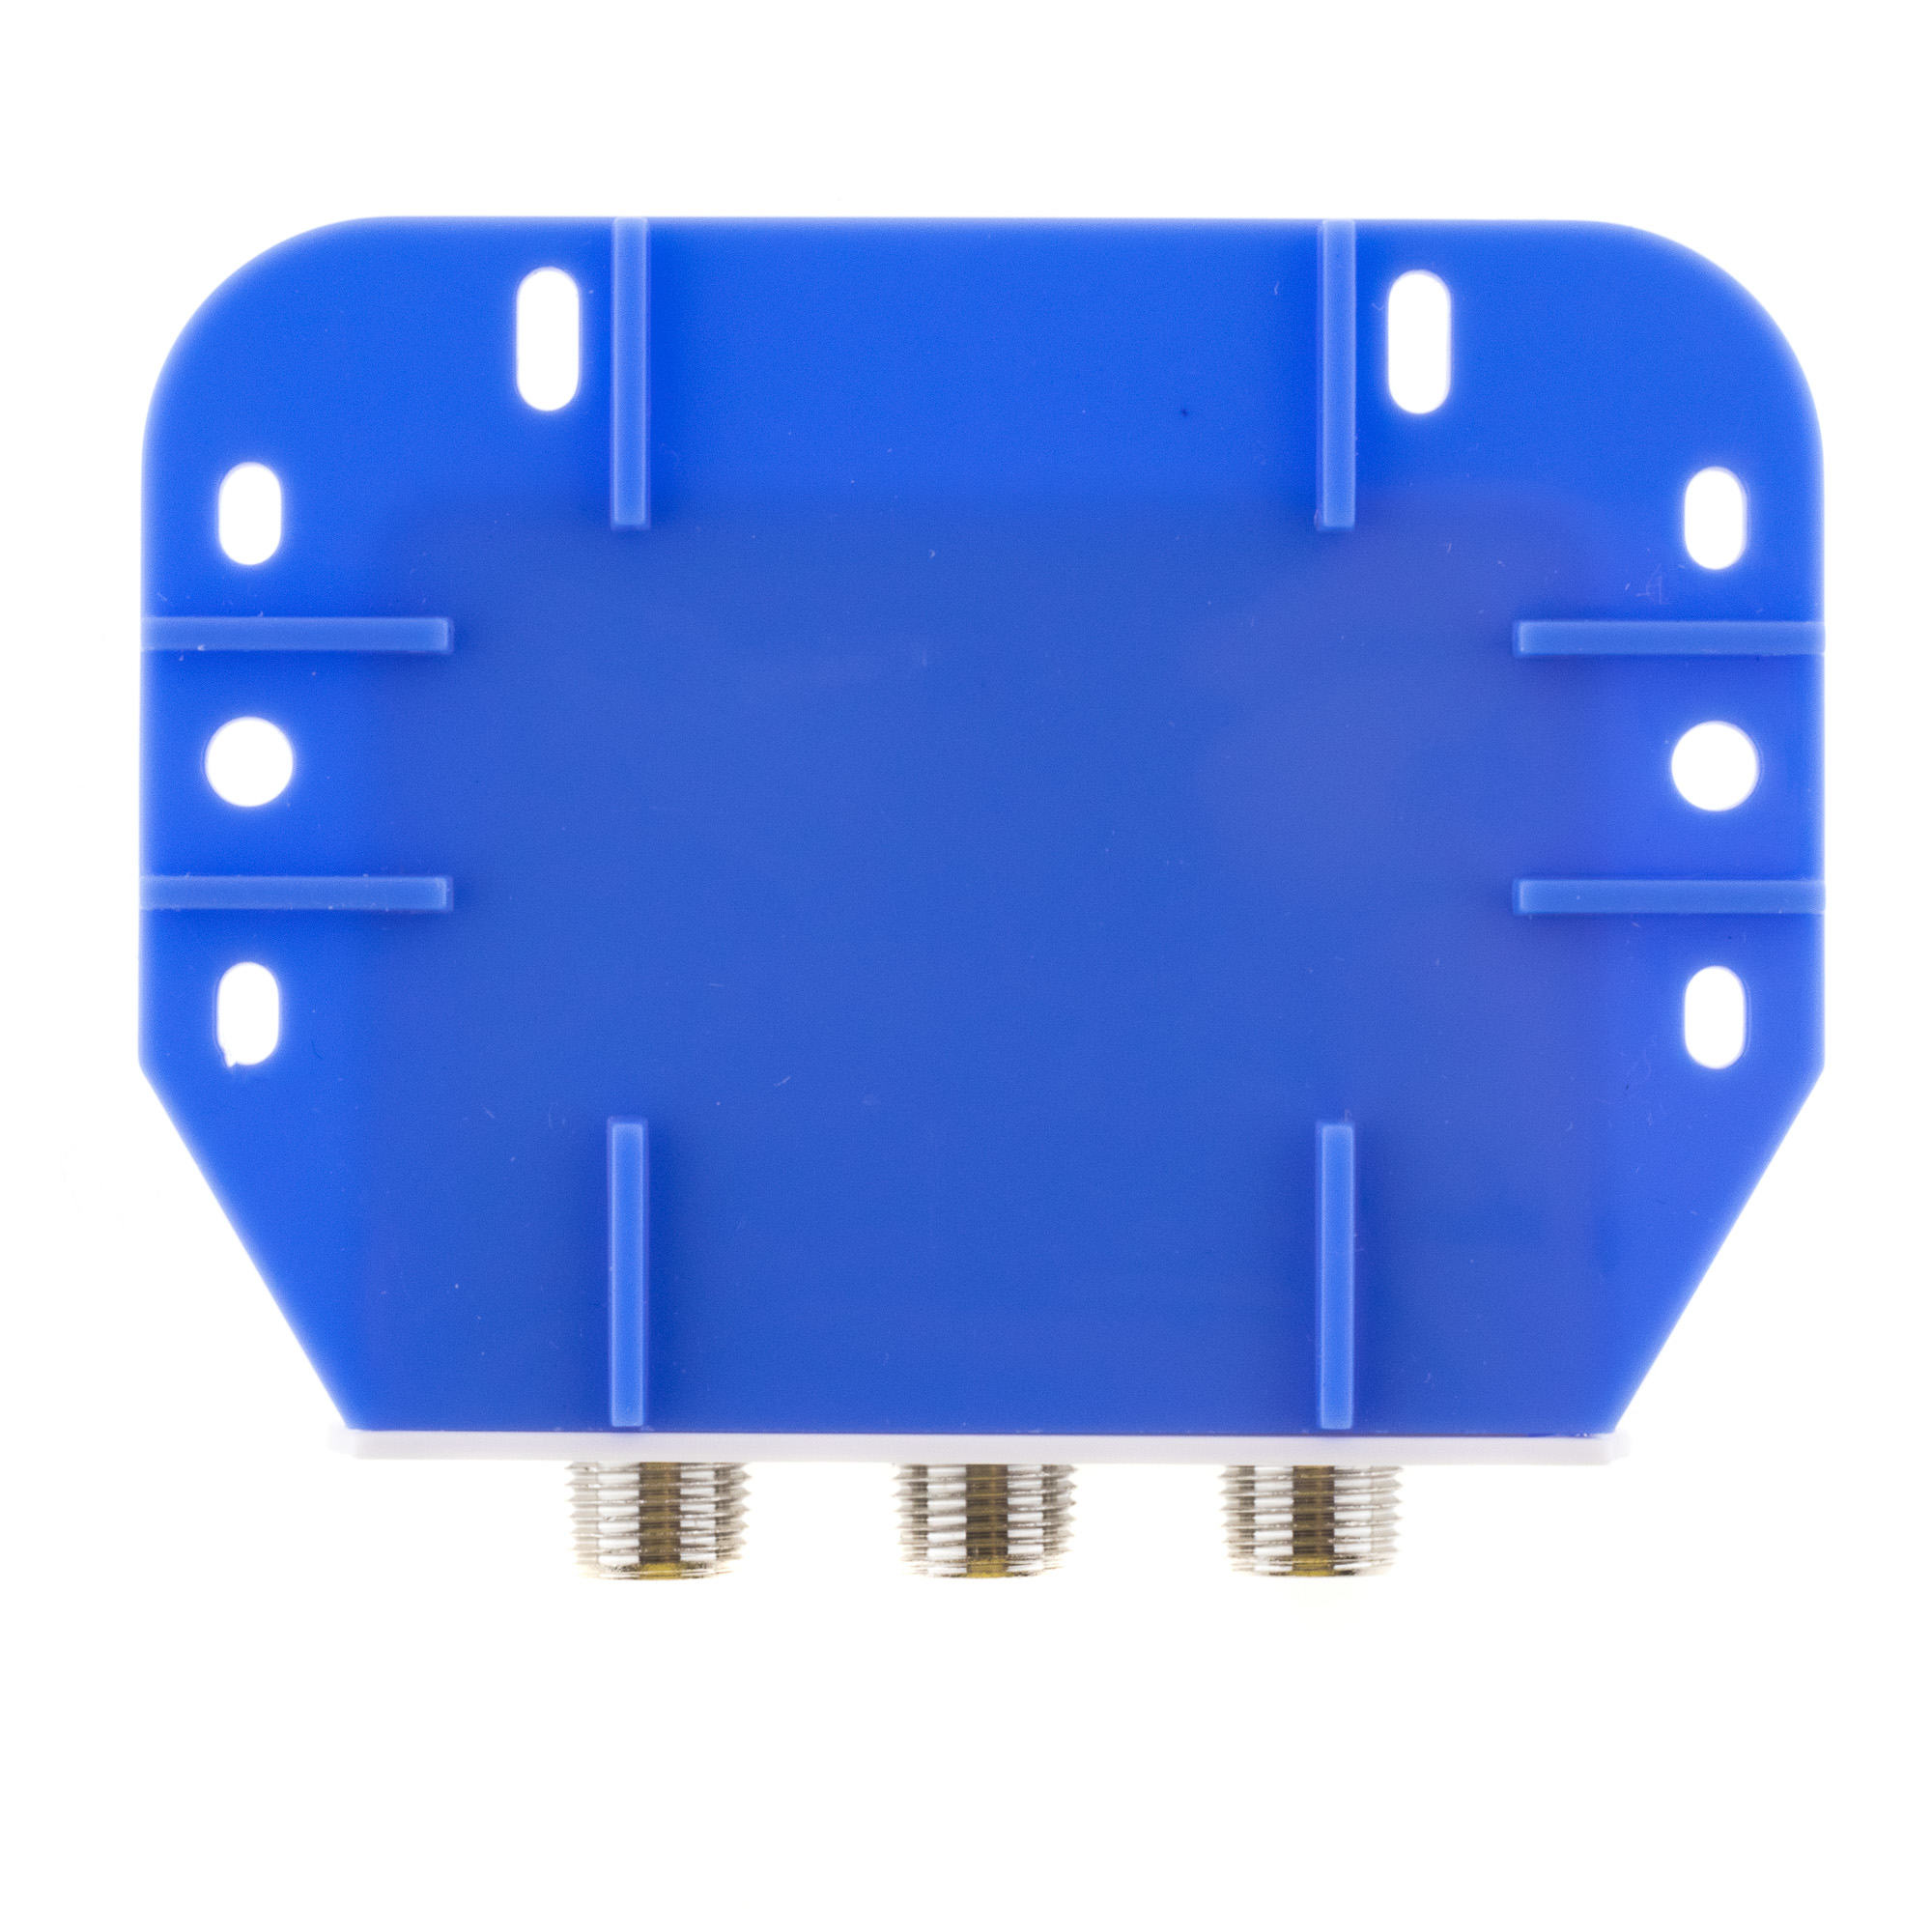 DiSEqC-Schalter 2IN-1OUT mit Wetterschutzgehäuse